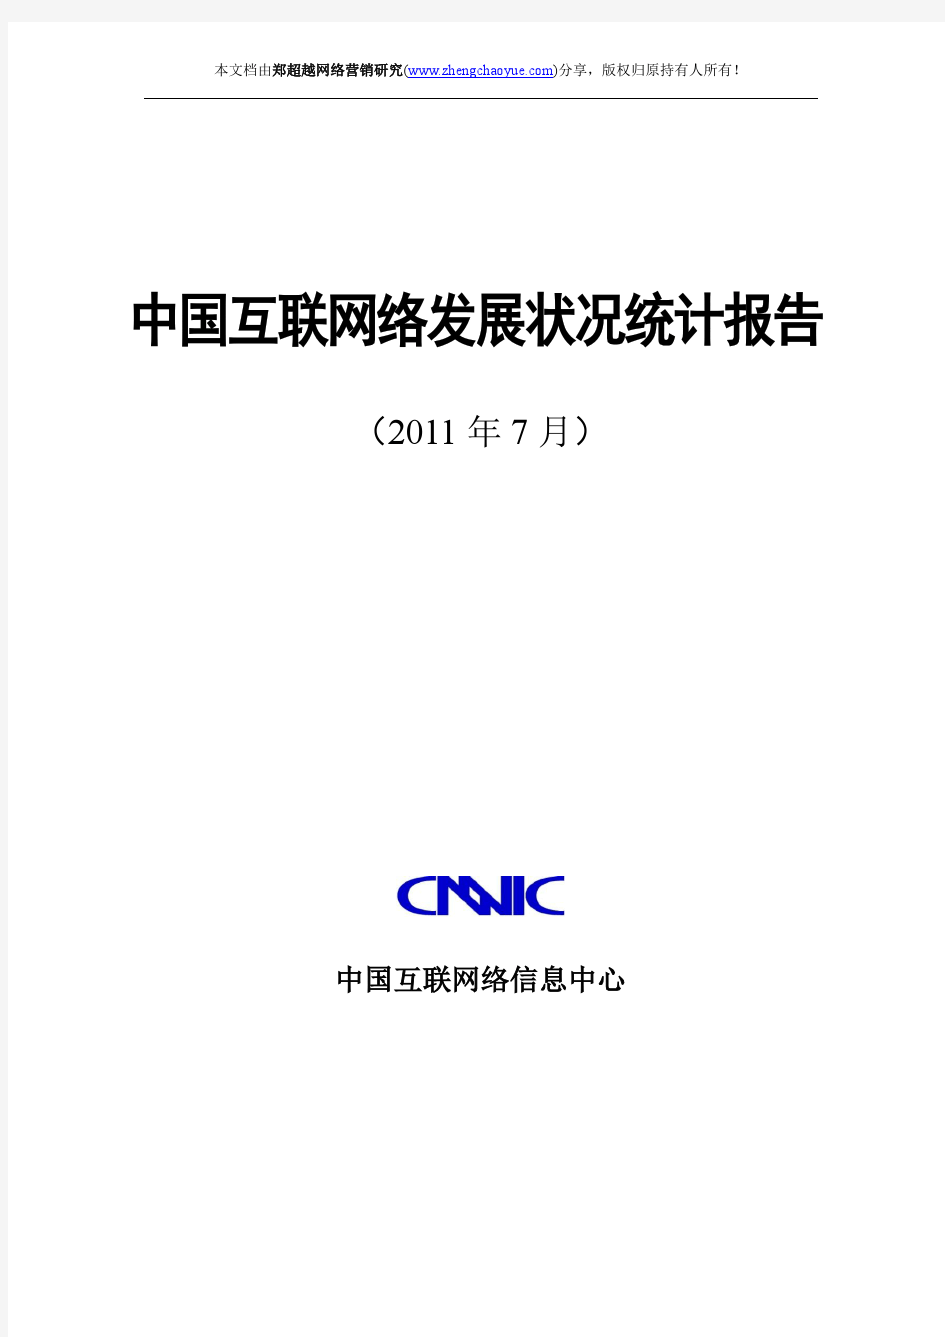 第28次中国互联网络发展状况统计报告